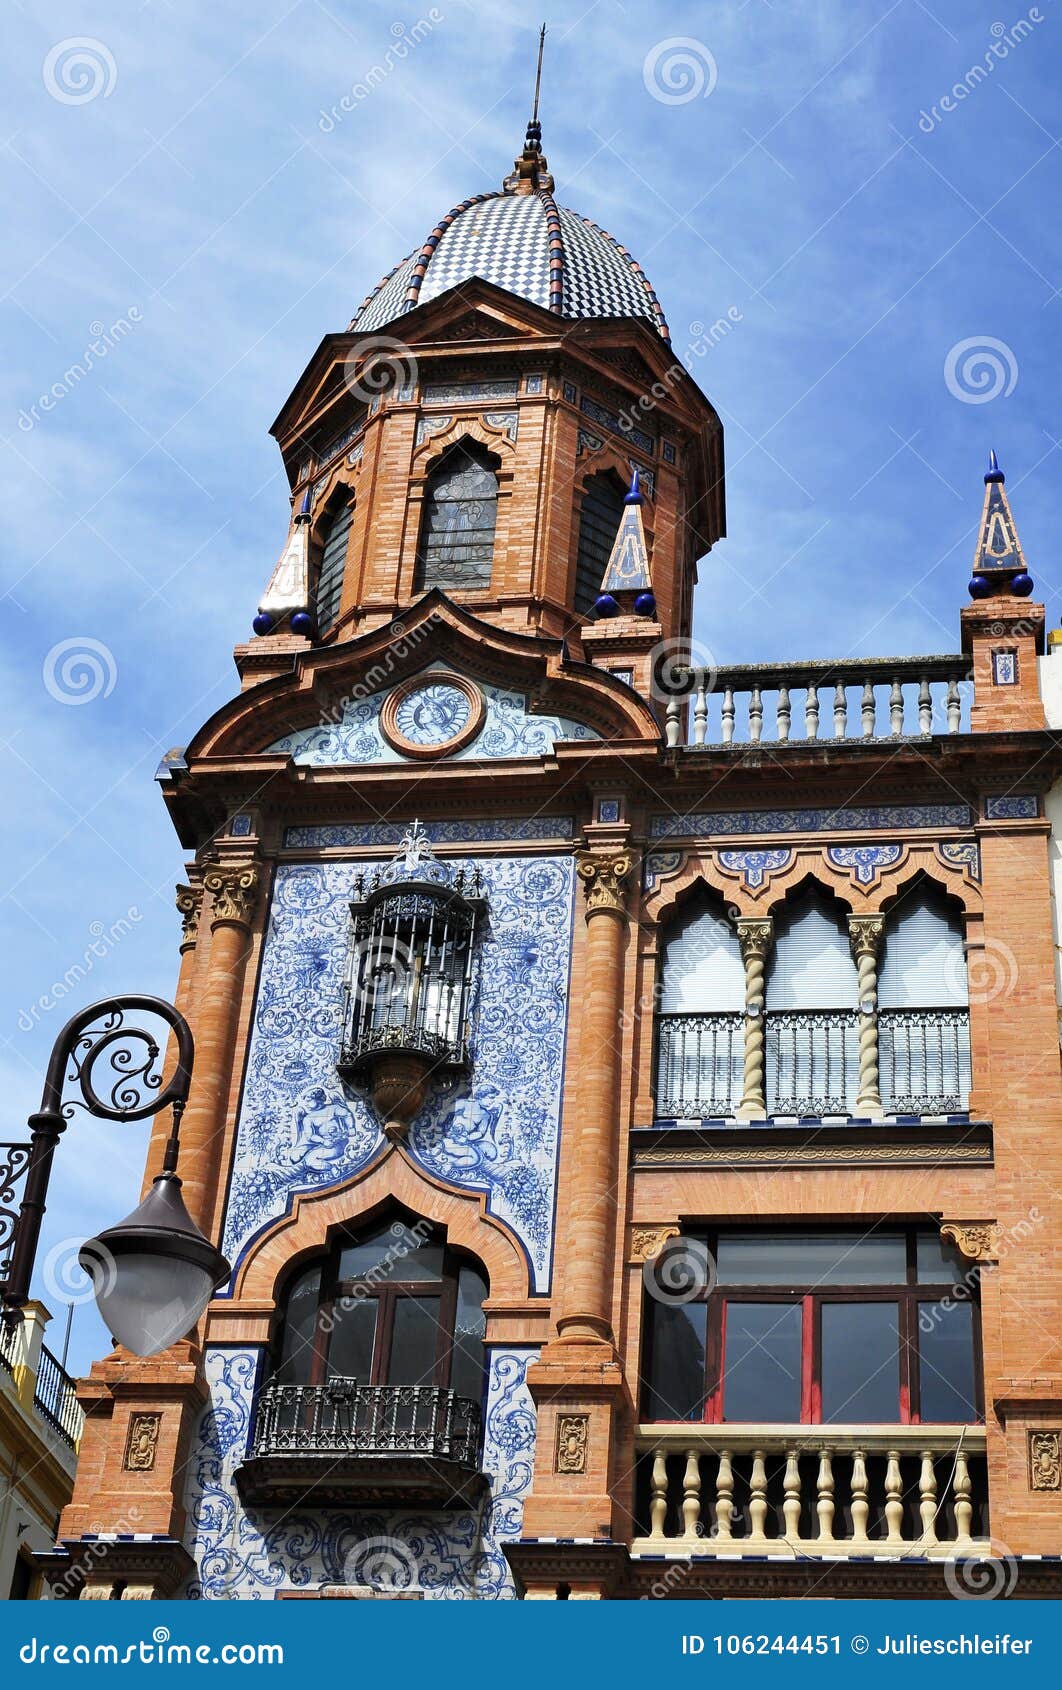 pedro roldan building at plaza del pan in seville, spain